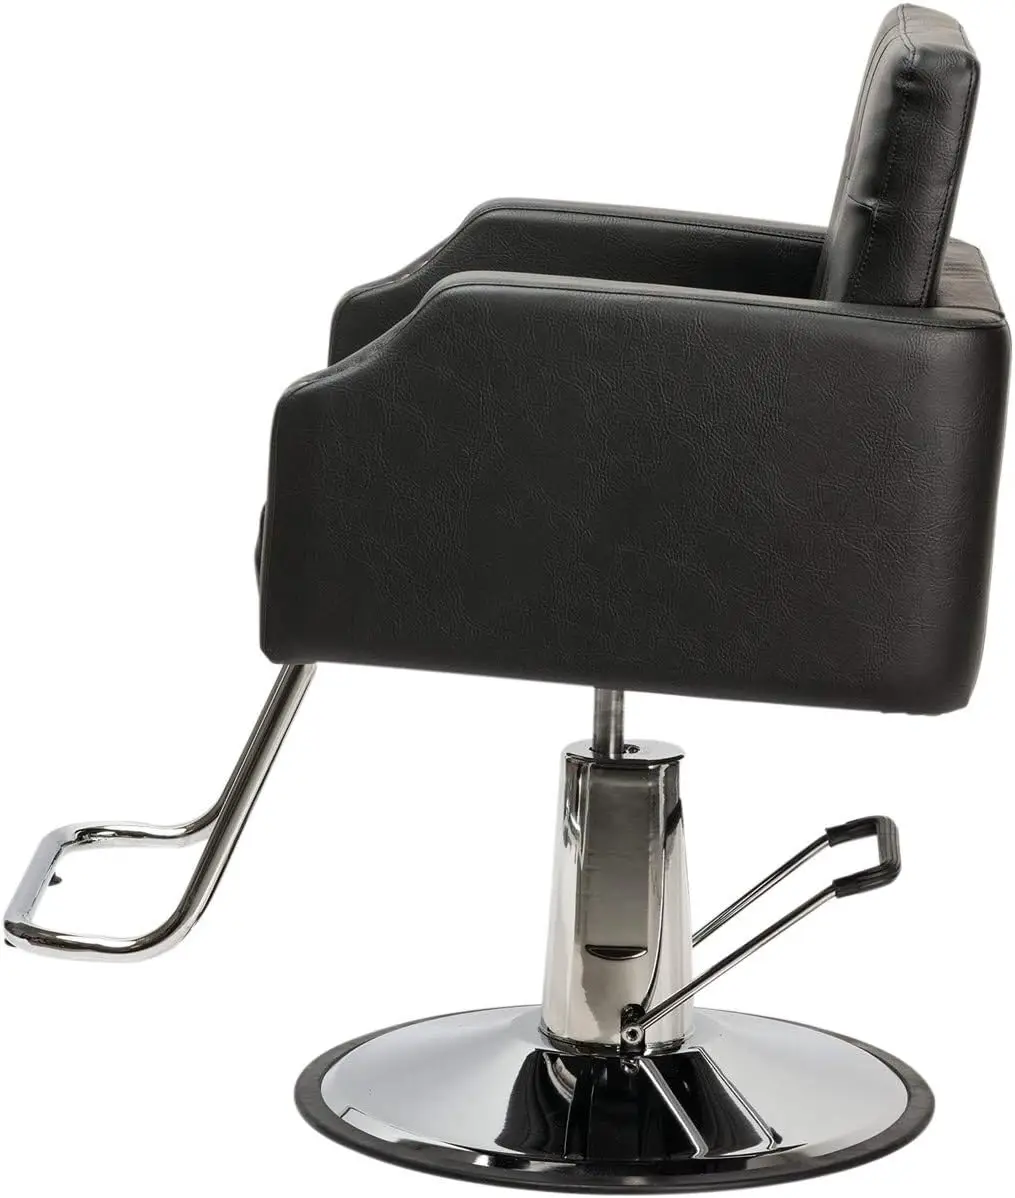 شراء-شعير أسود كرسي التصميم الحديث لصالونات المهنية ، المصممون والحلاقين ، مقعد واسع جدا ، تصميم معقم ، الثقيلة